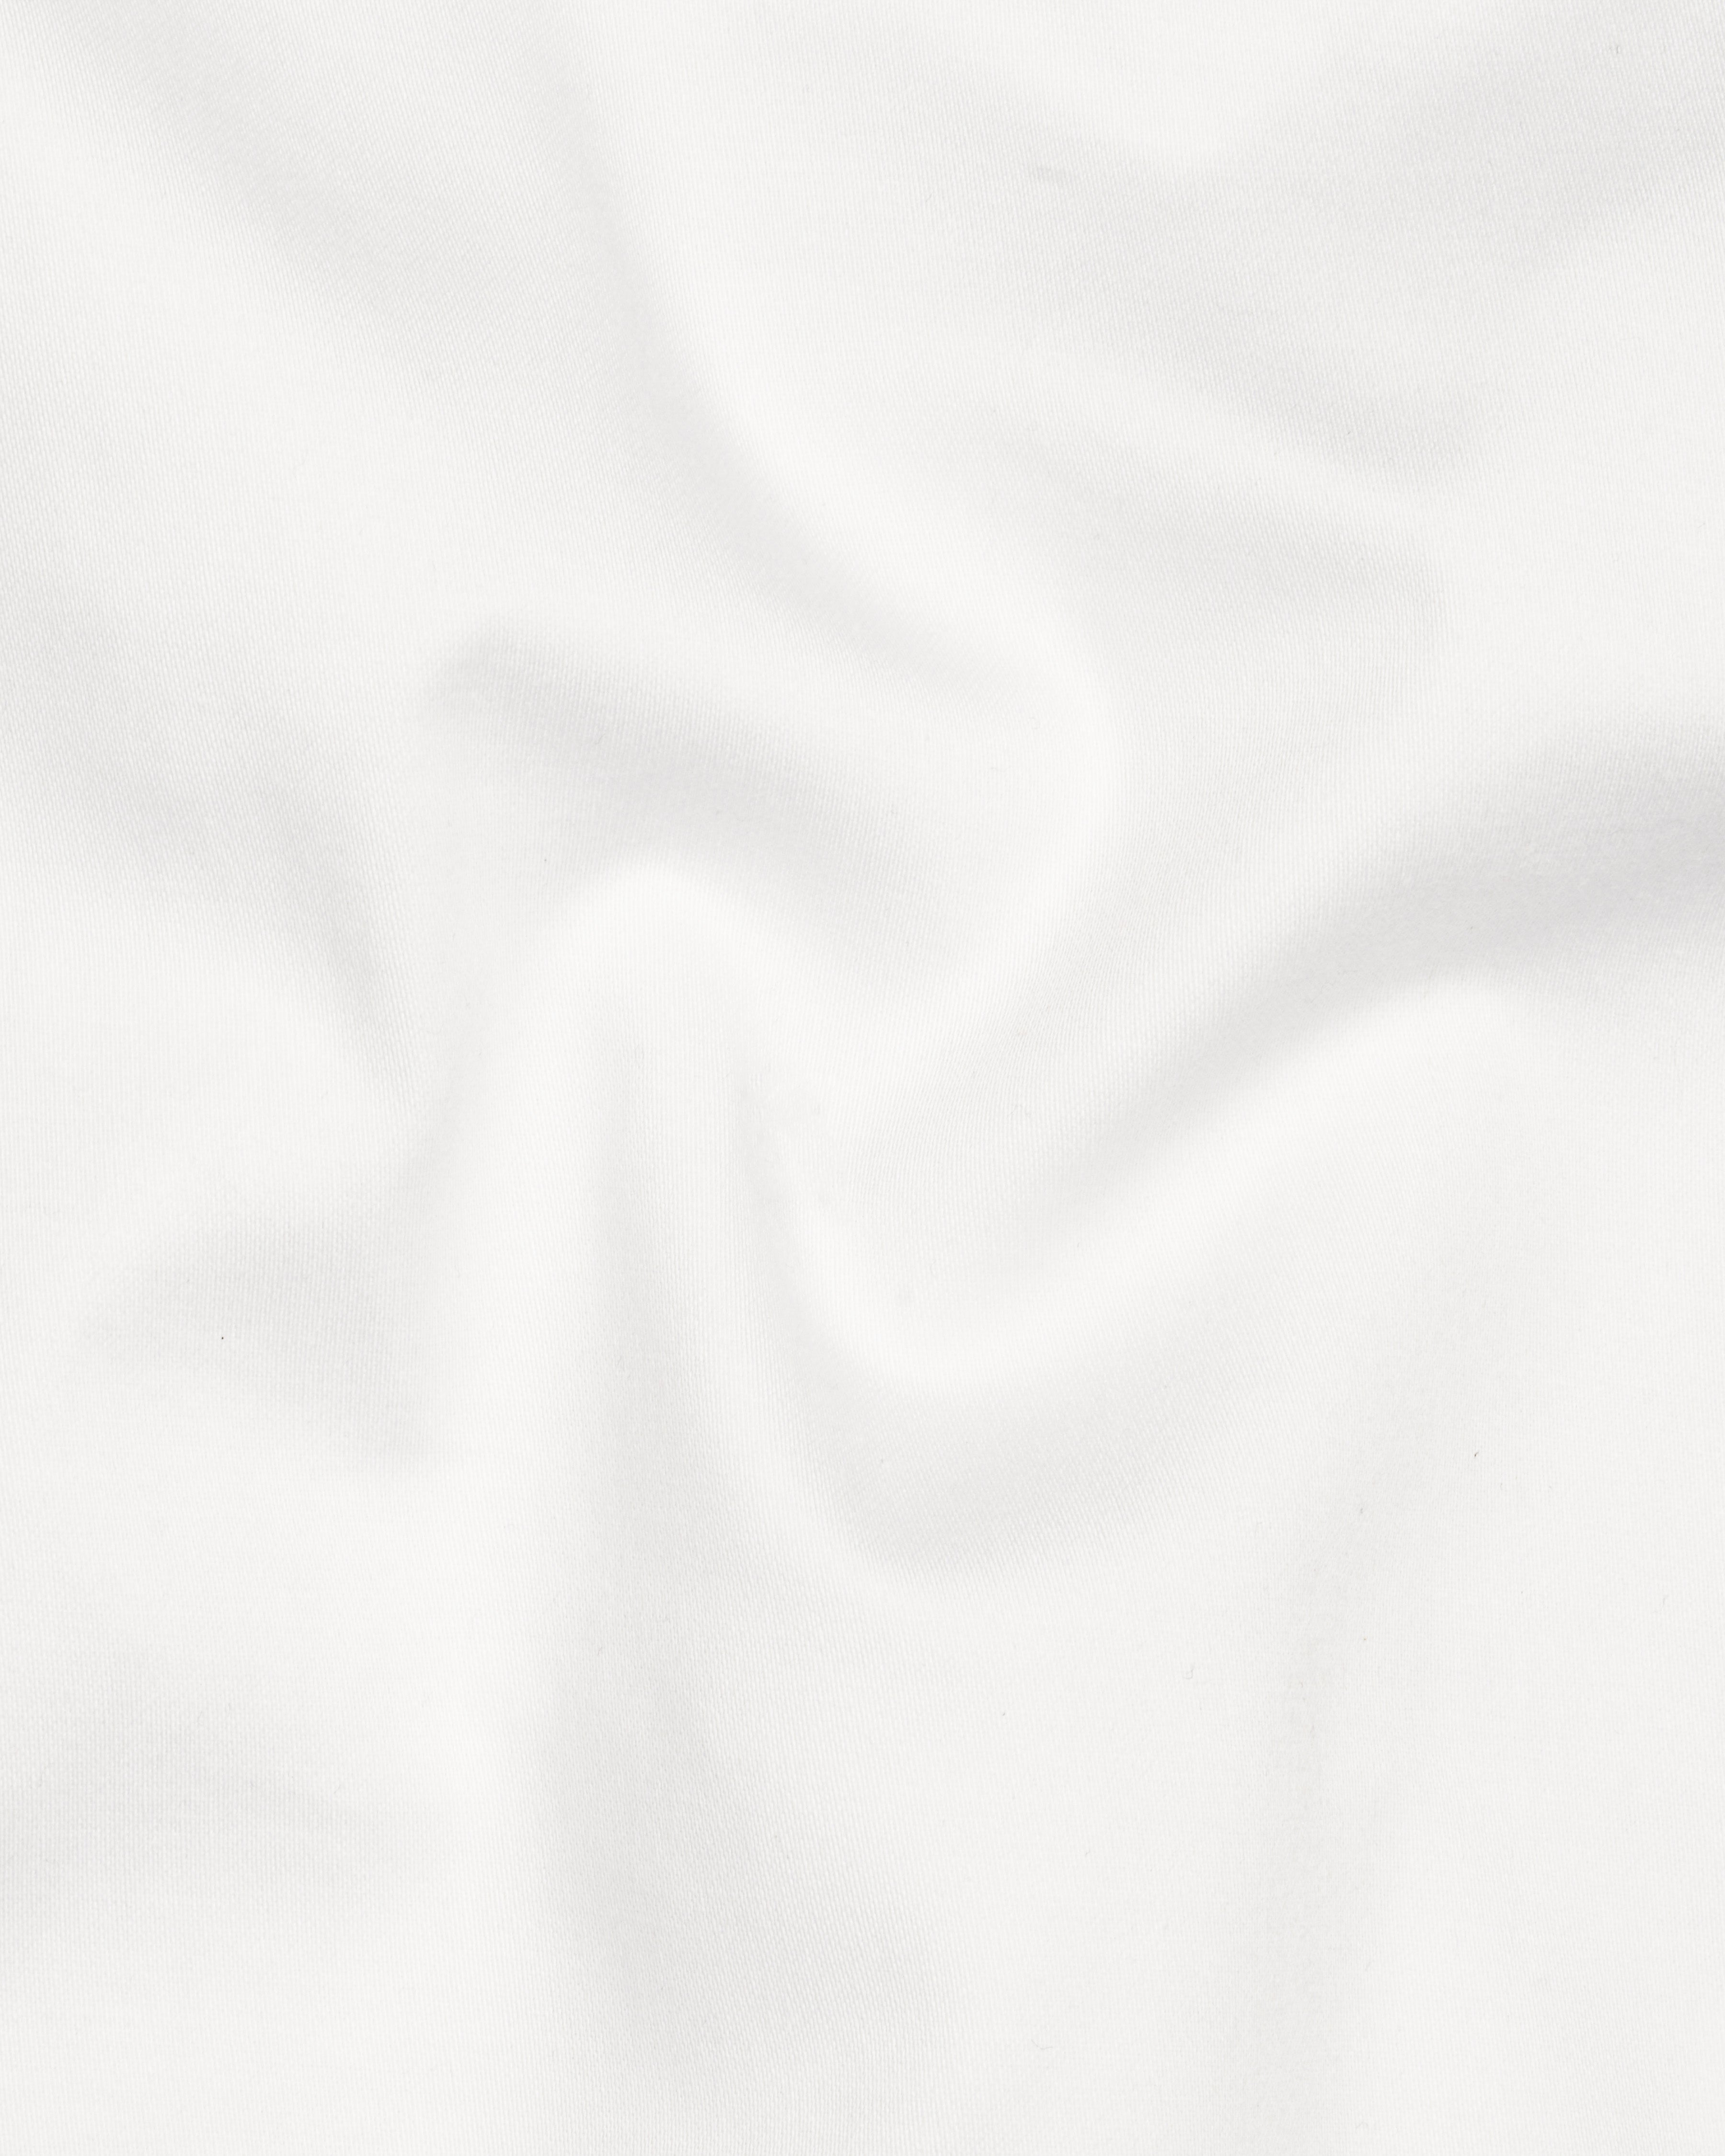 Bright White Solid Premium Cotton Waistcoat V2632-36, V2632-38, V2632-40, V2632-42, V2632-44, V2632-46, V2632-48, V2632-50, V2632-52, V2632-54, V2632-56, V2632-58, V2632-60